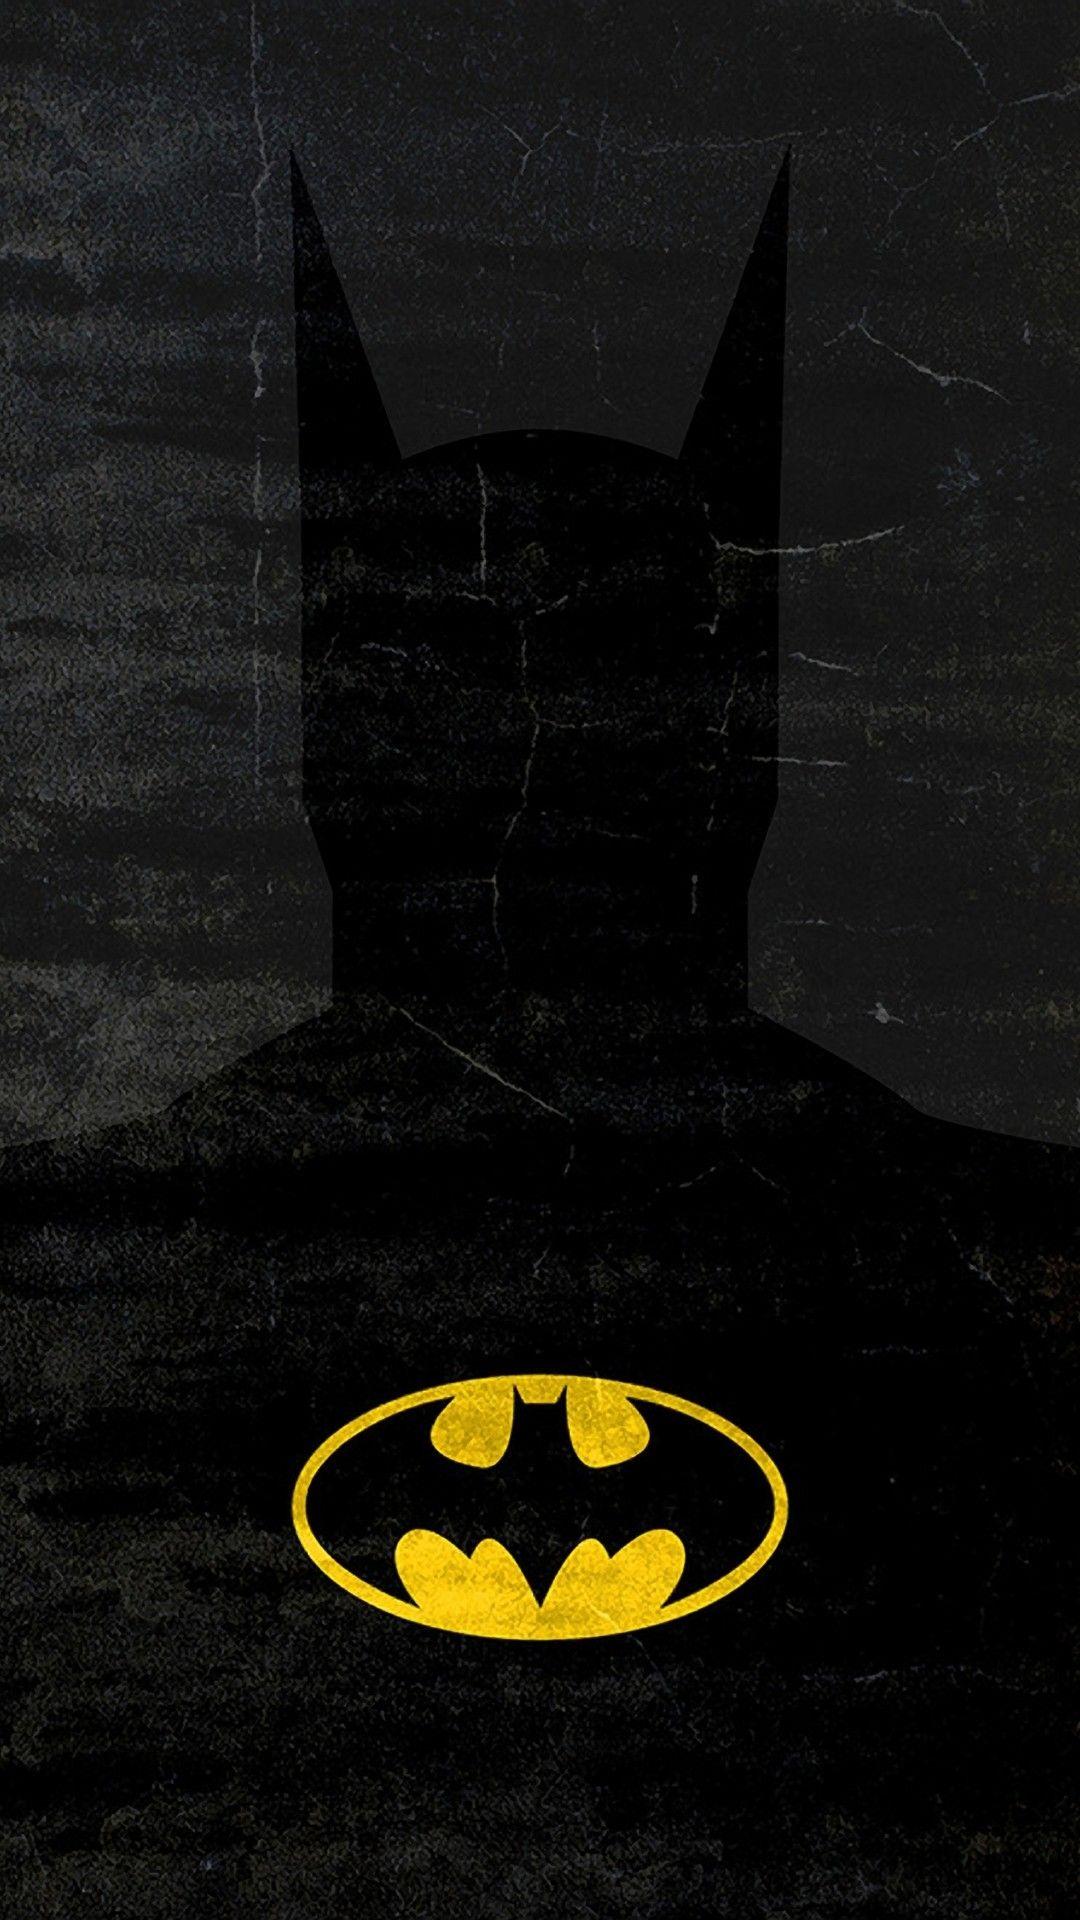 Wallpaper ID 304928  Comics Batman Phone Wallpaper DC Comics 1440x3200  free download